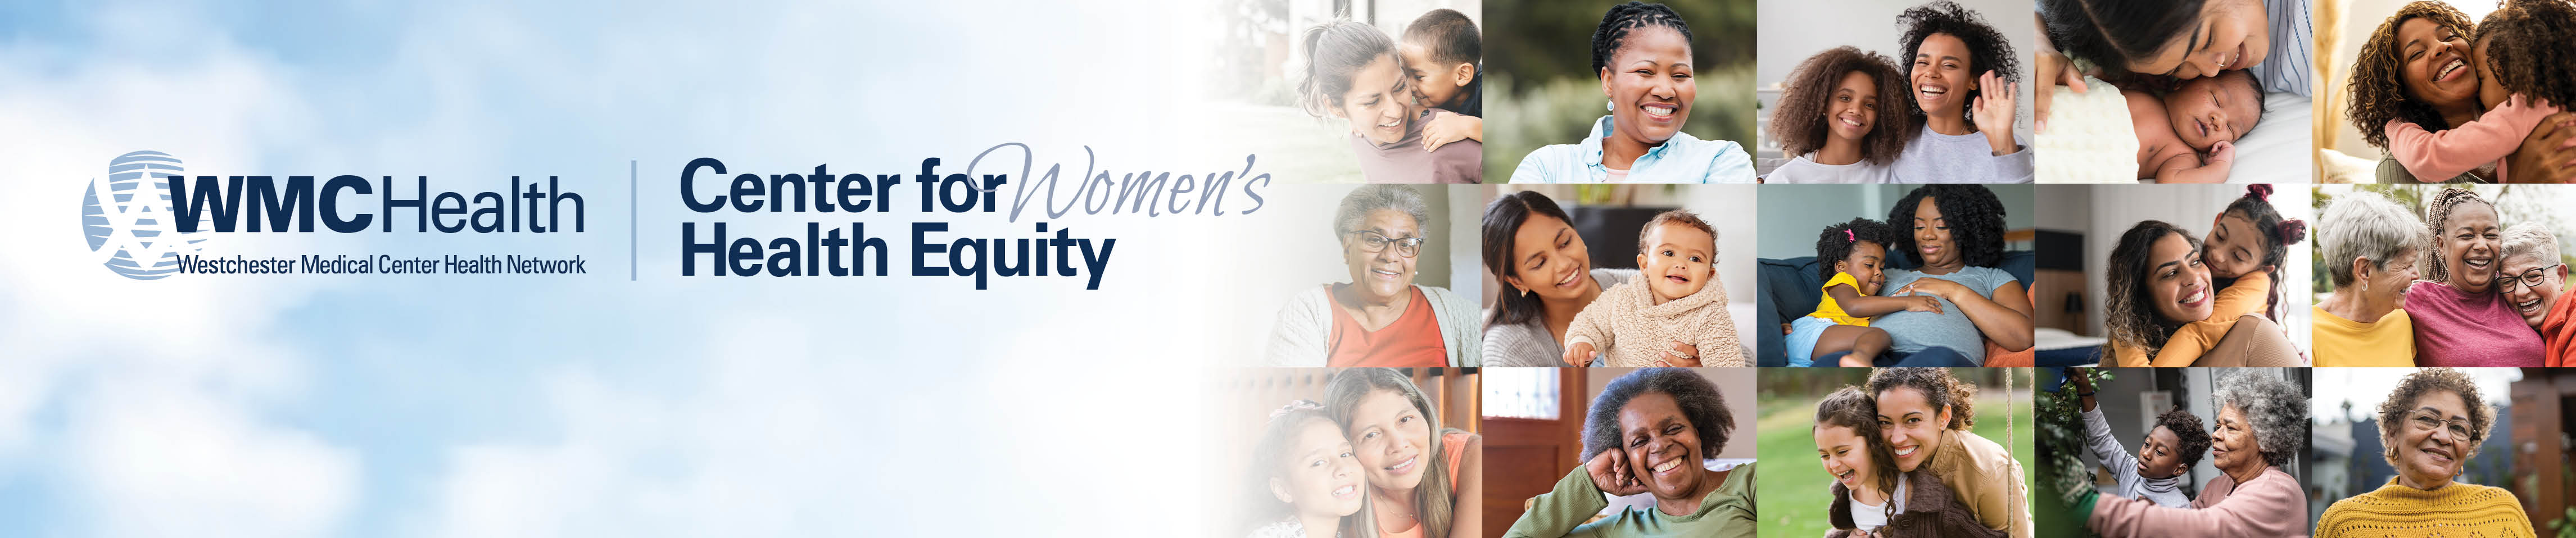 Center for Women's Health Equity